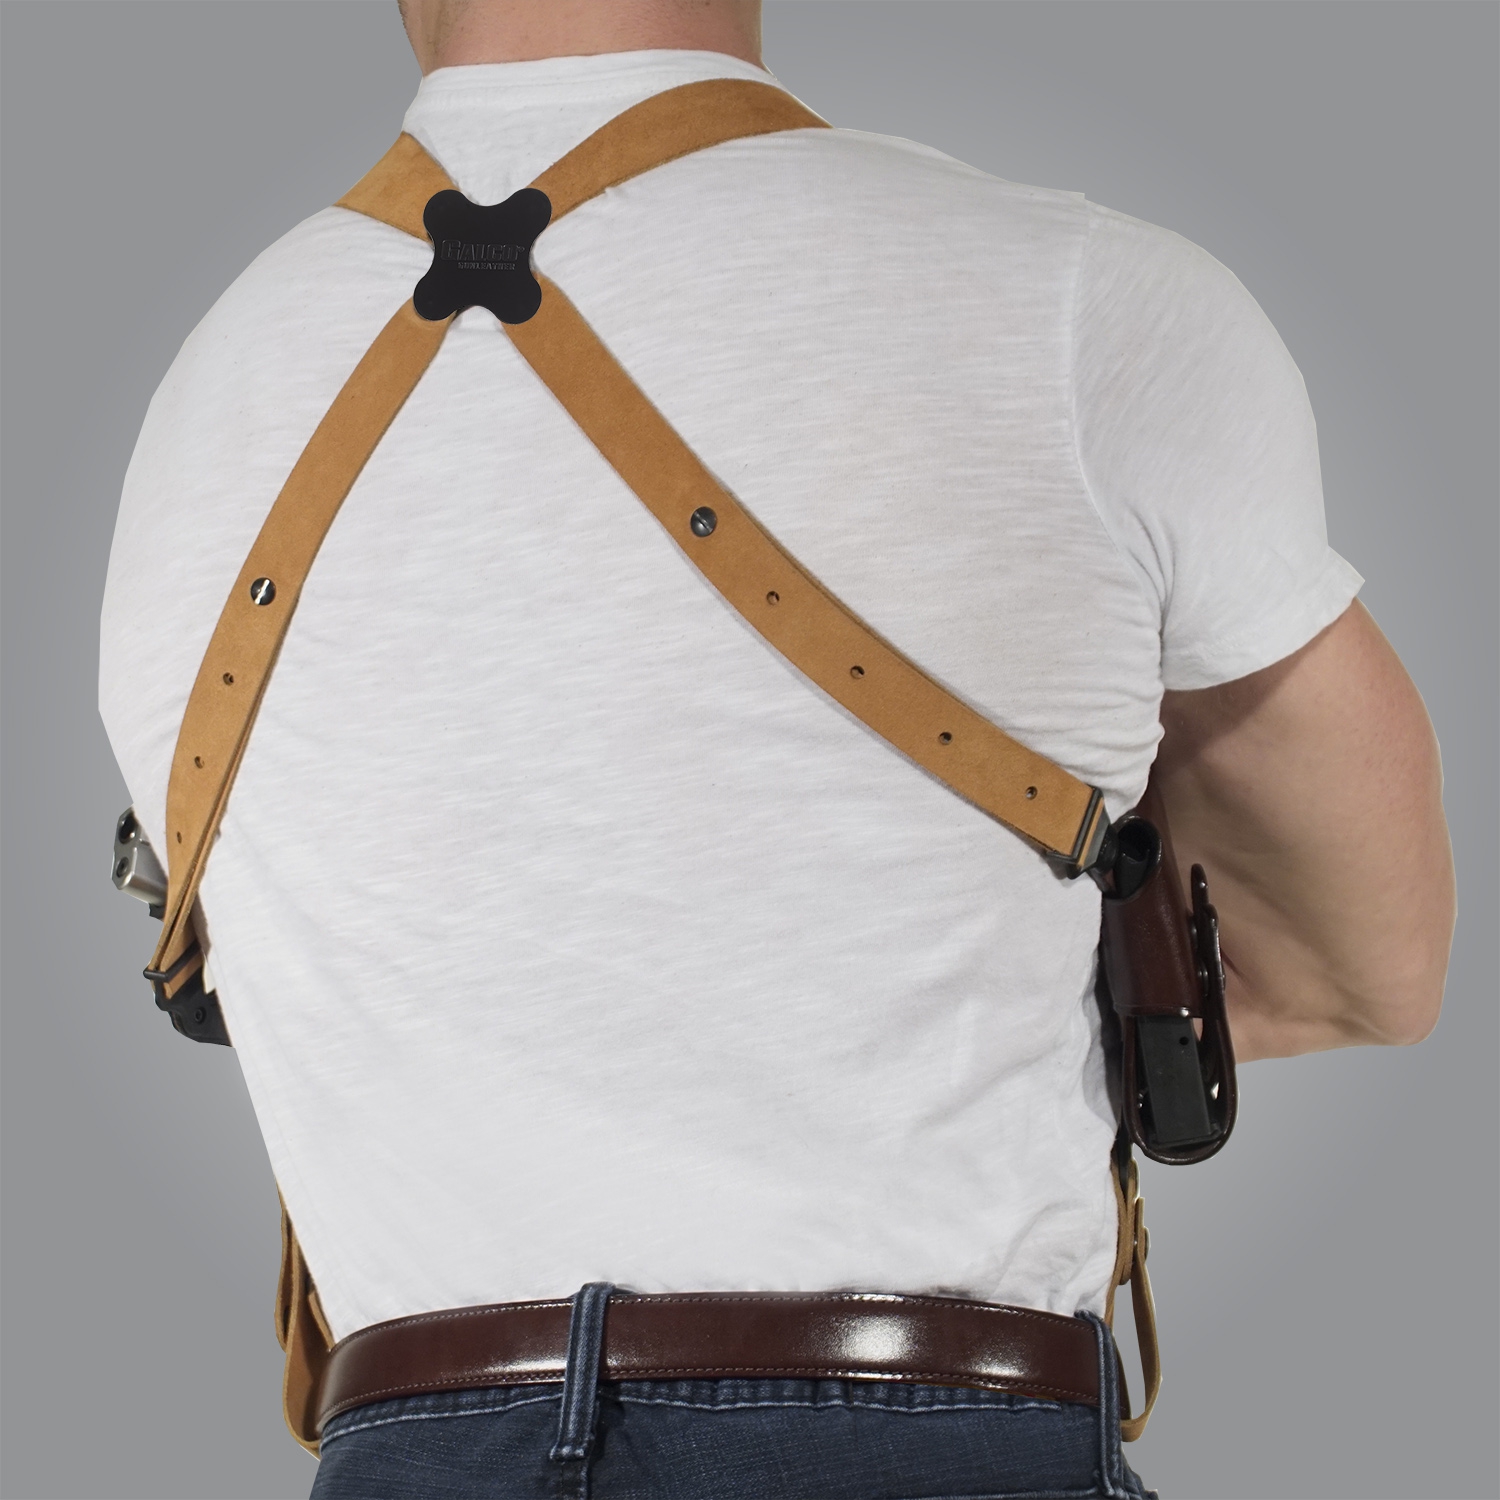 Jackass shoulder holster — pic 4